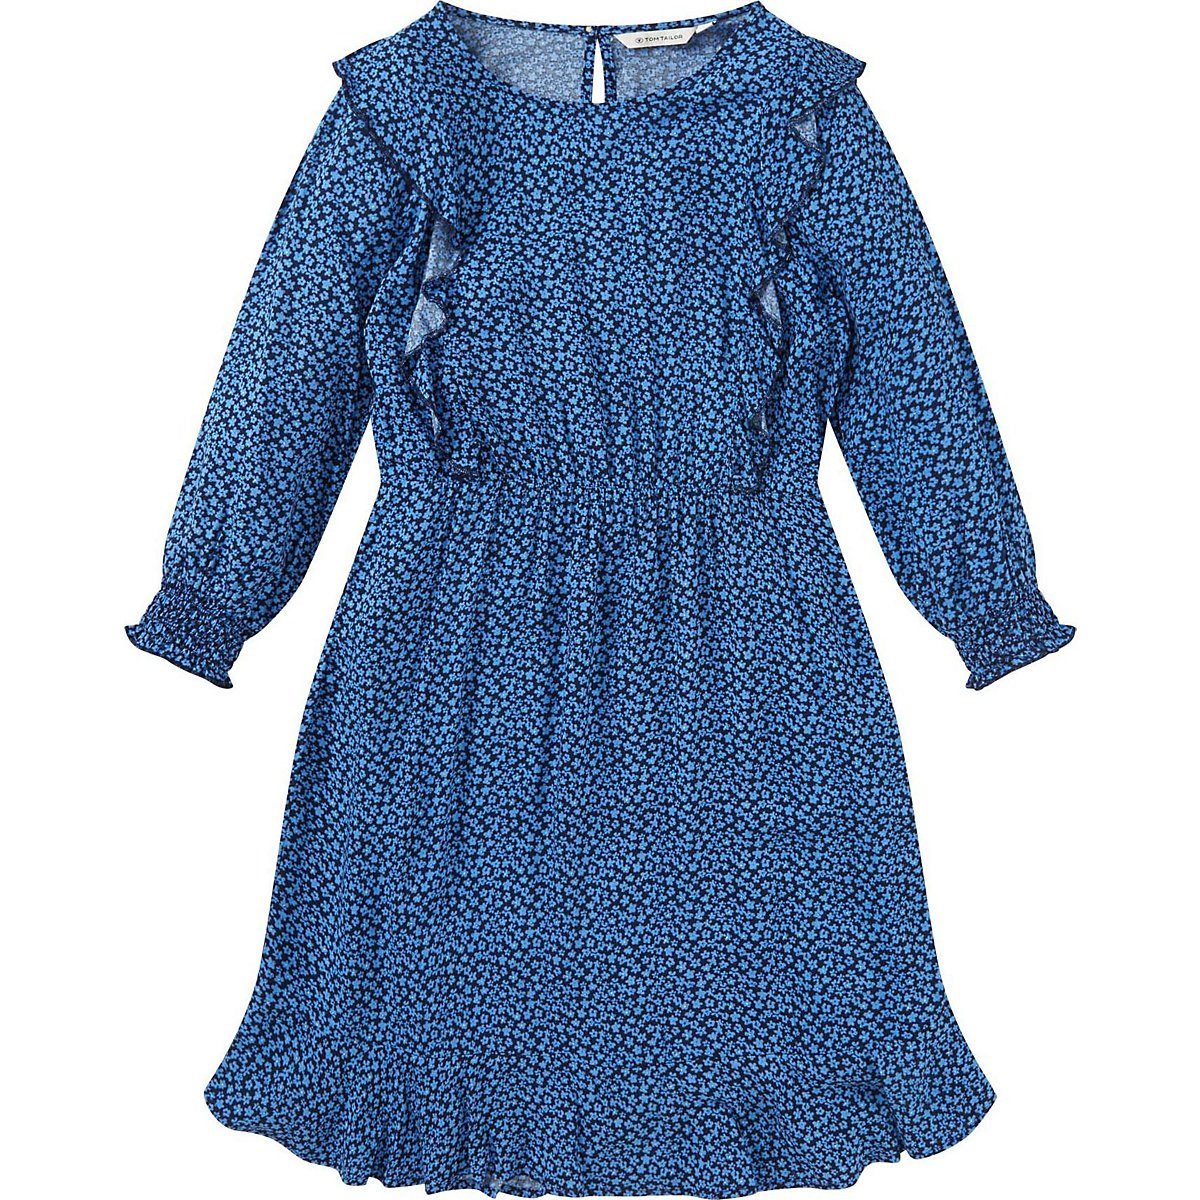 TOM TAILOR A-Linien-Kleid »Kinder Kleid« online kaufen | OTTO